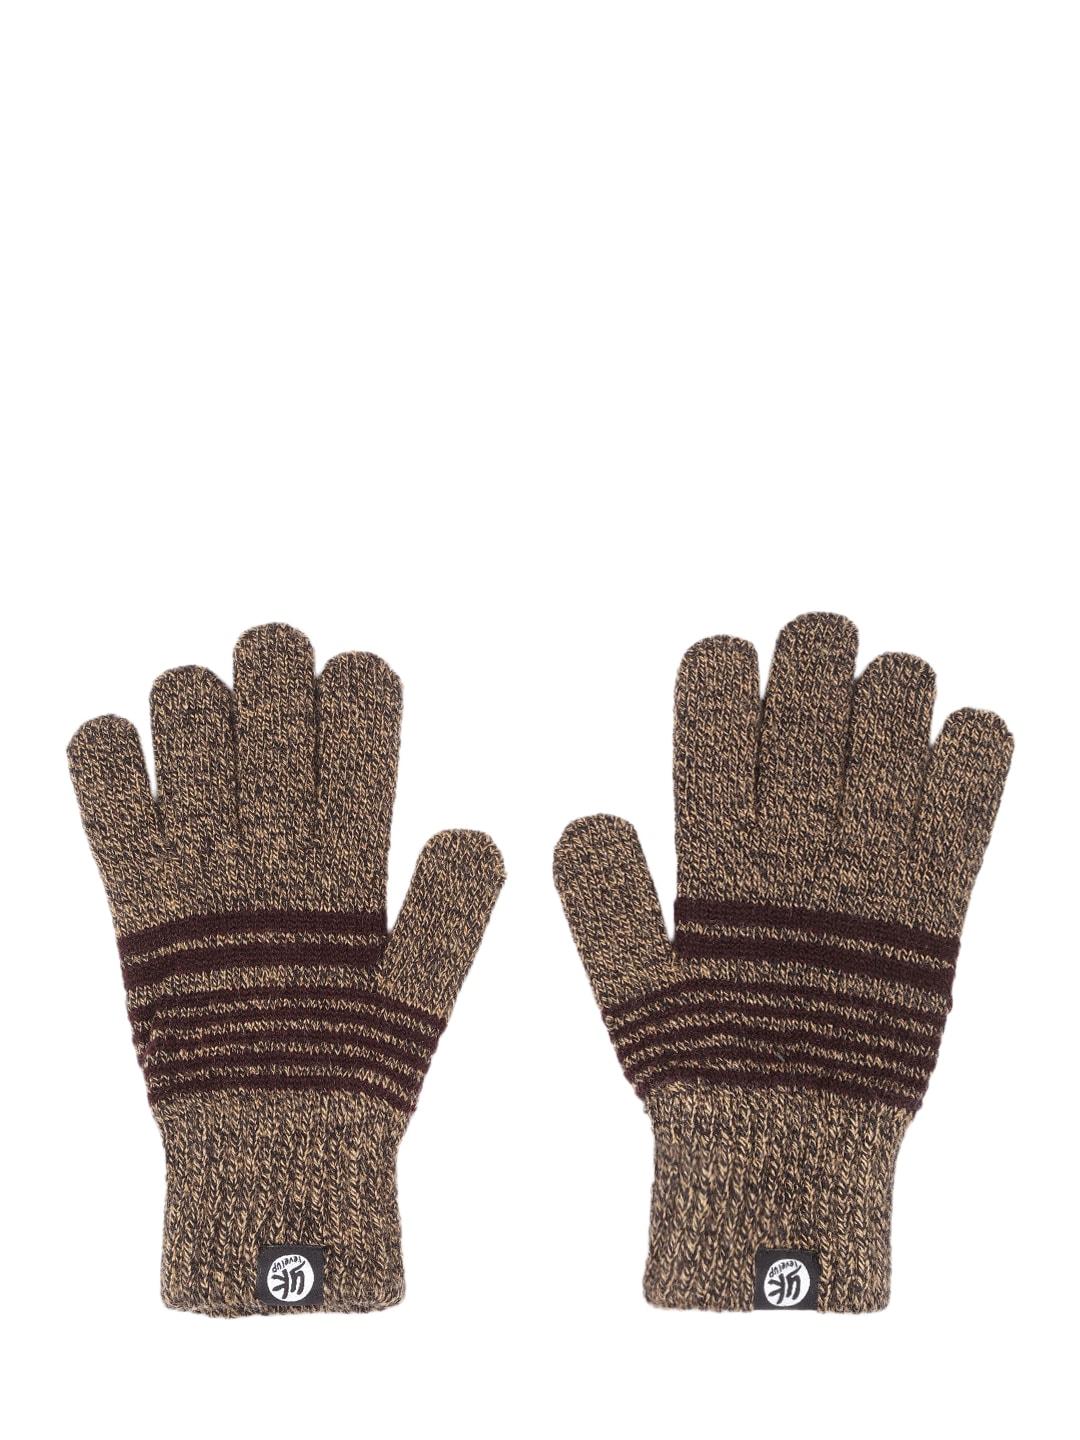 yk-kids-coffee-brown-striped-hand-gloves